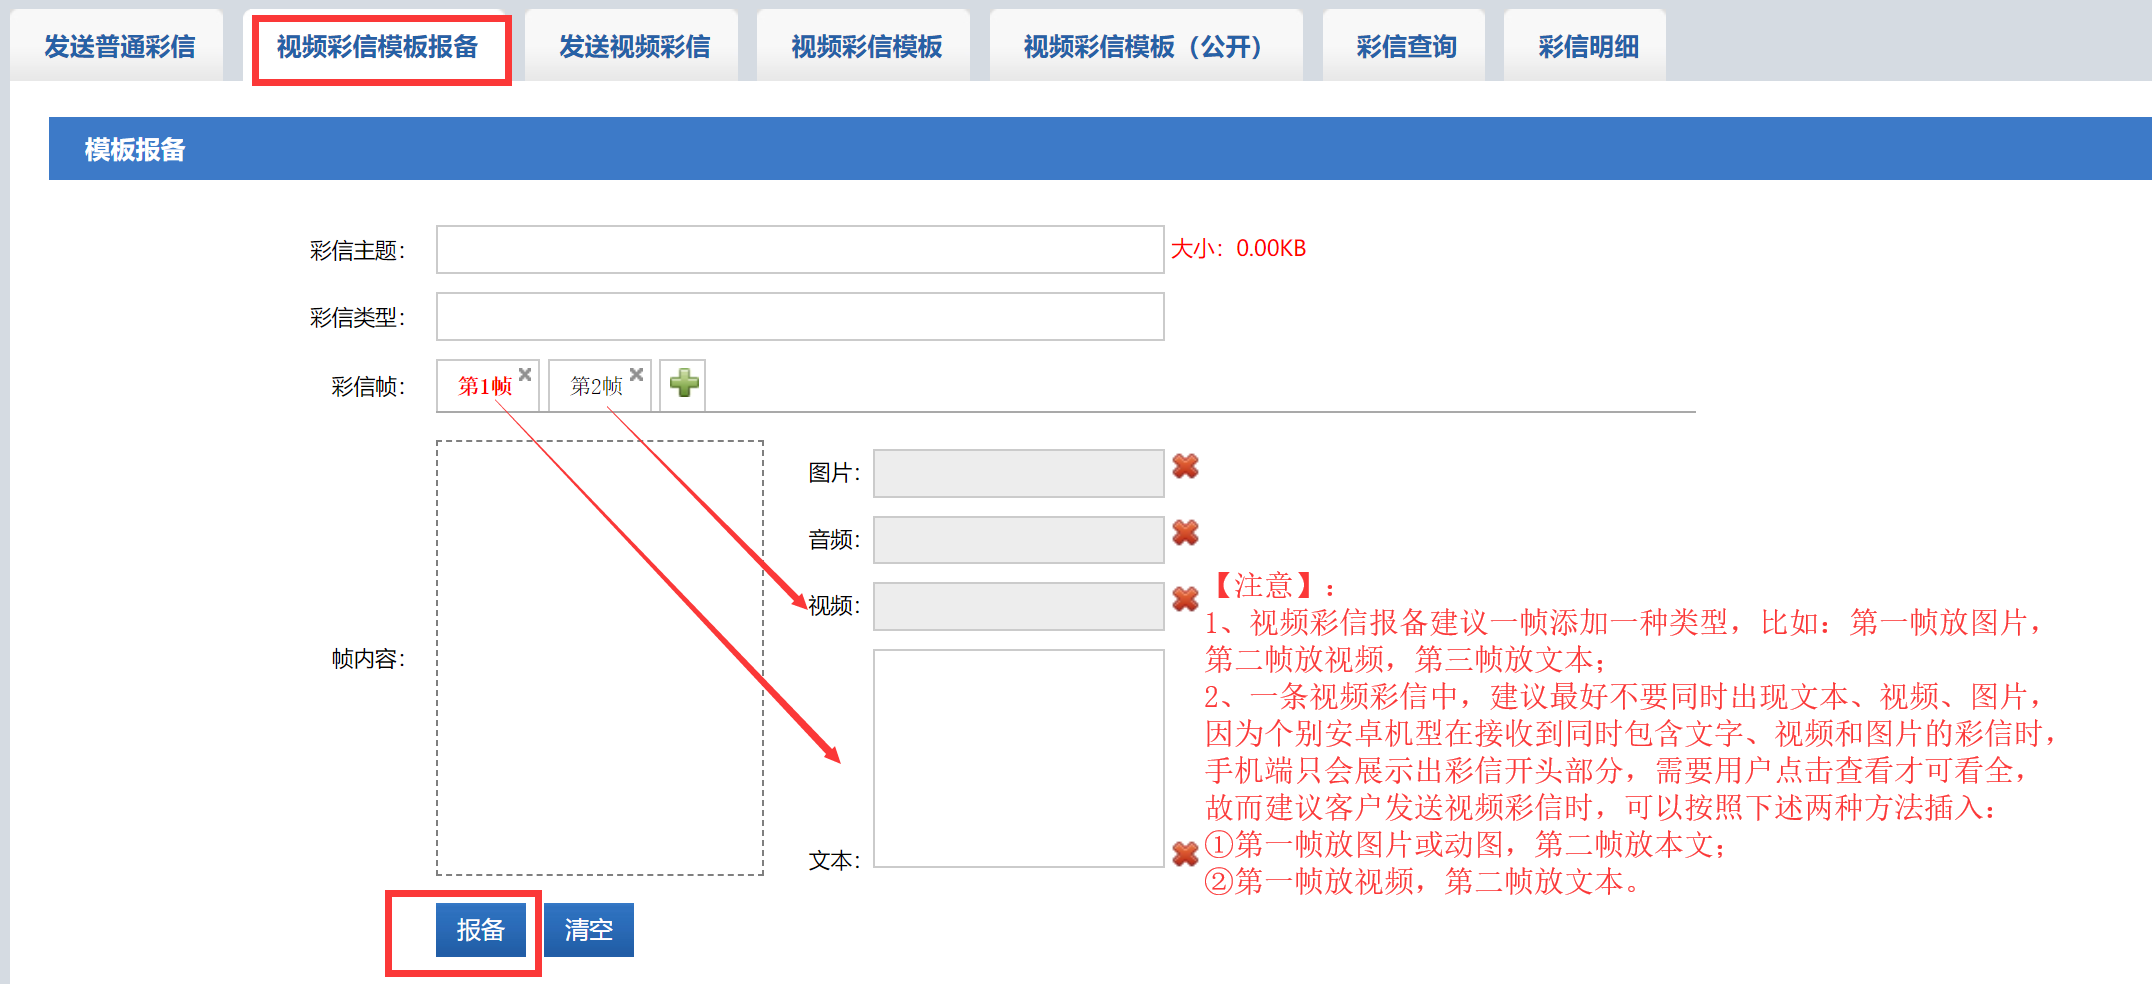 bwin·必赢(中国)唯一官方网站_产品674